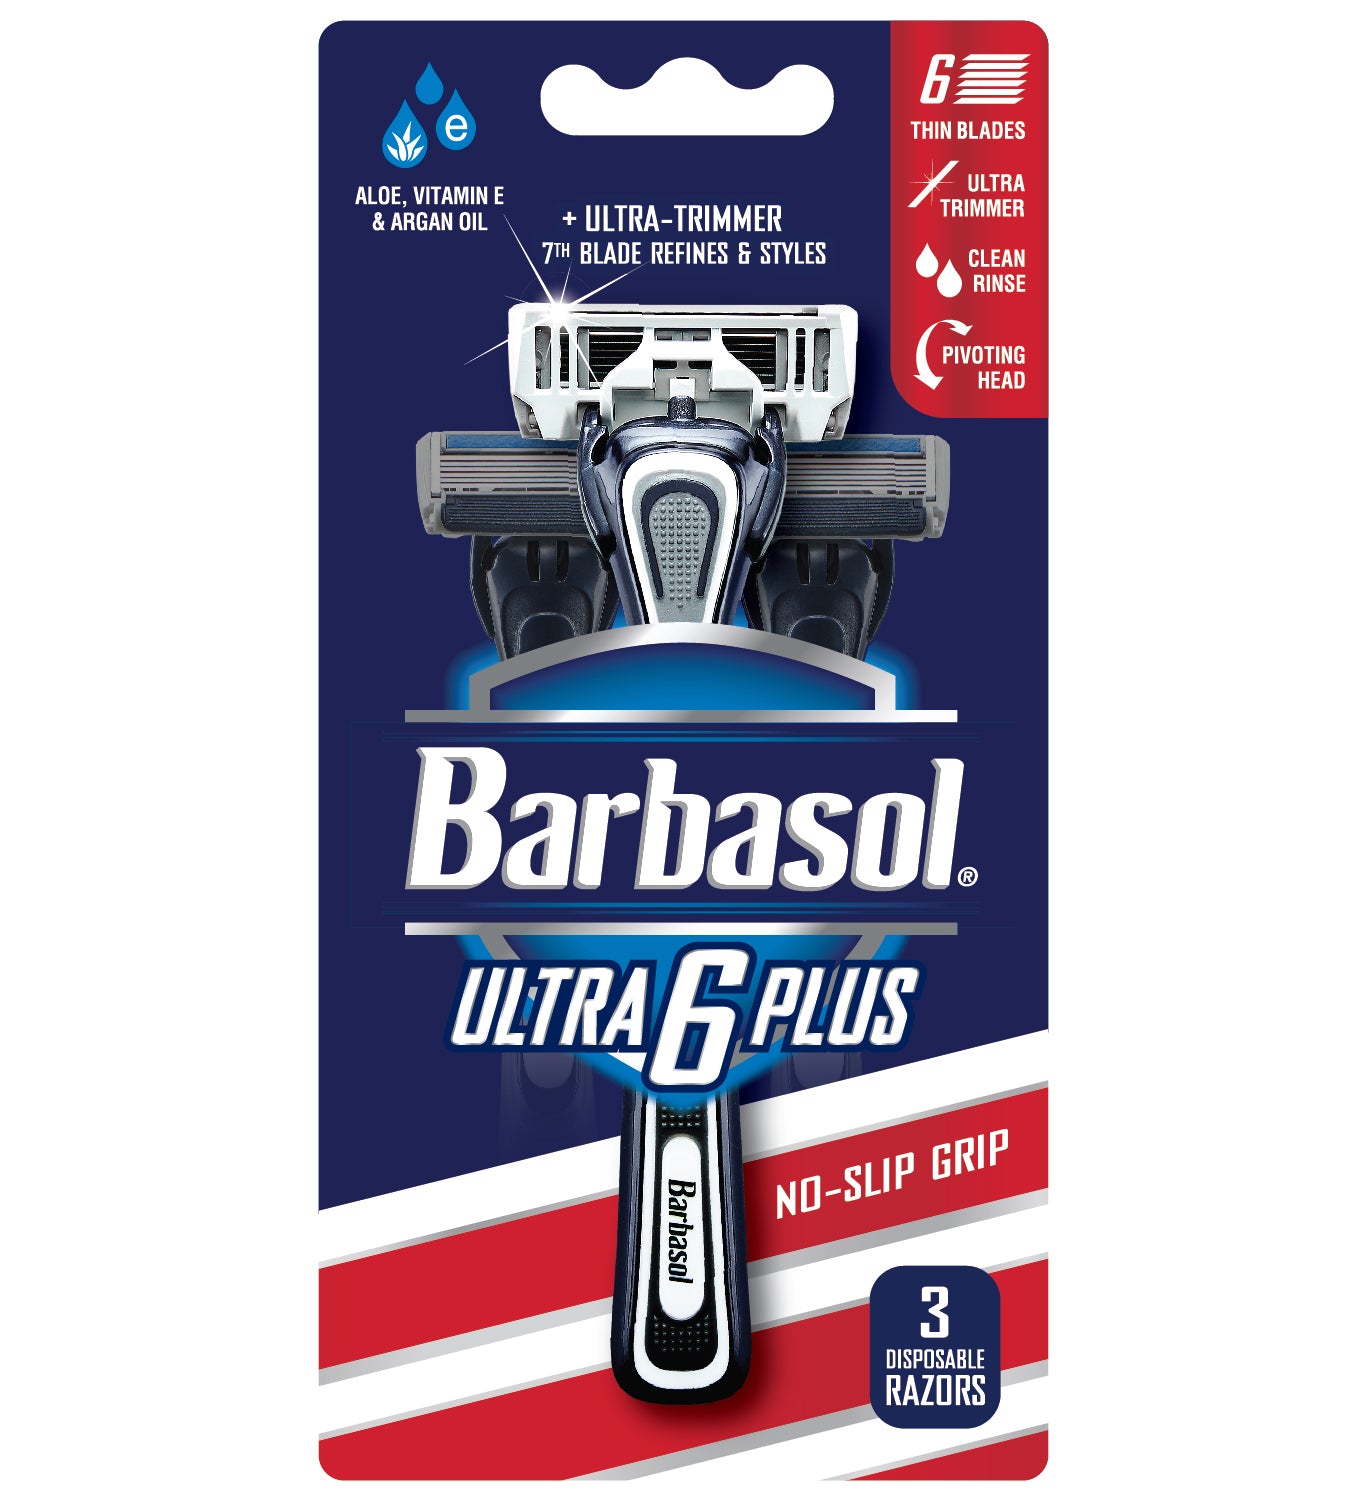 Barbasol Ultra 6 Plus Premium Disposable Razors, 3 Count